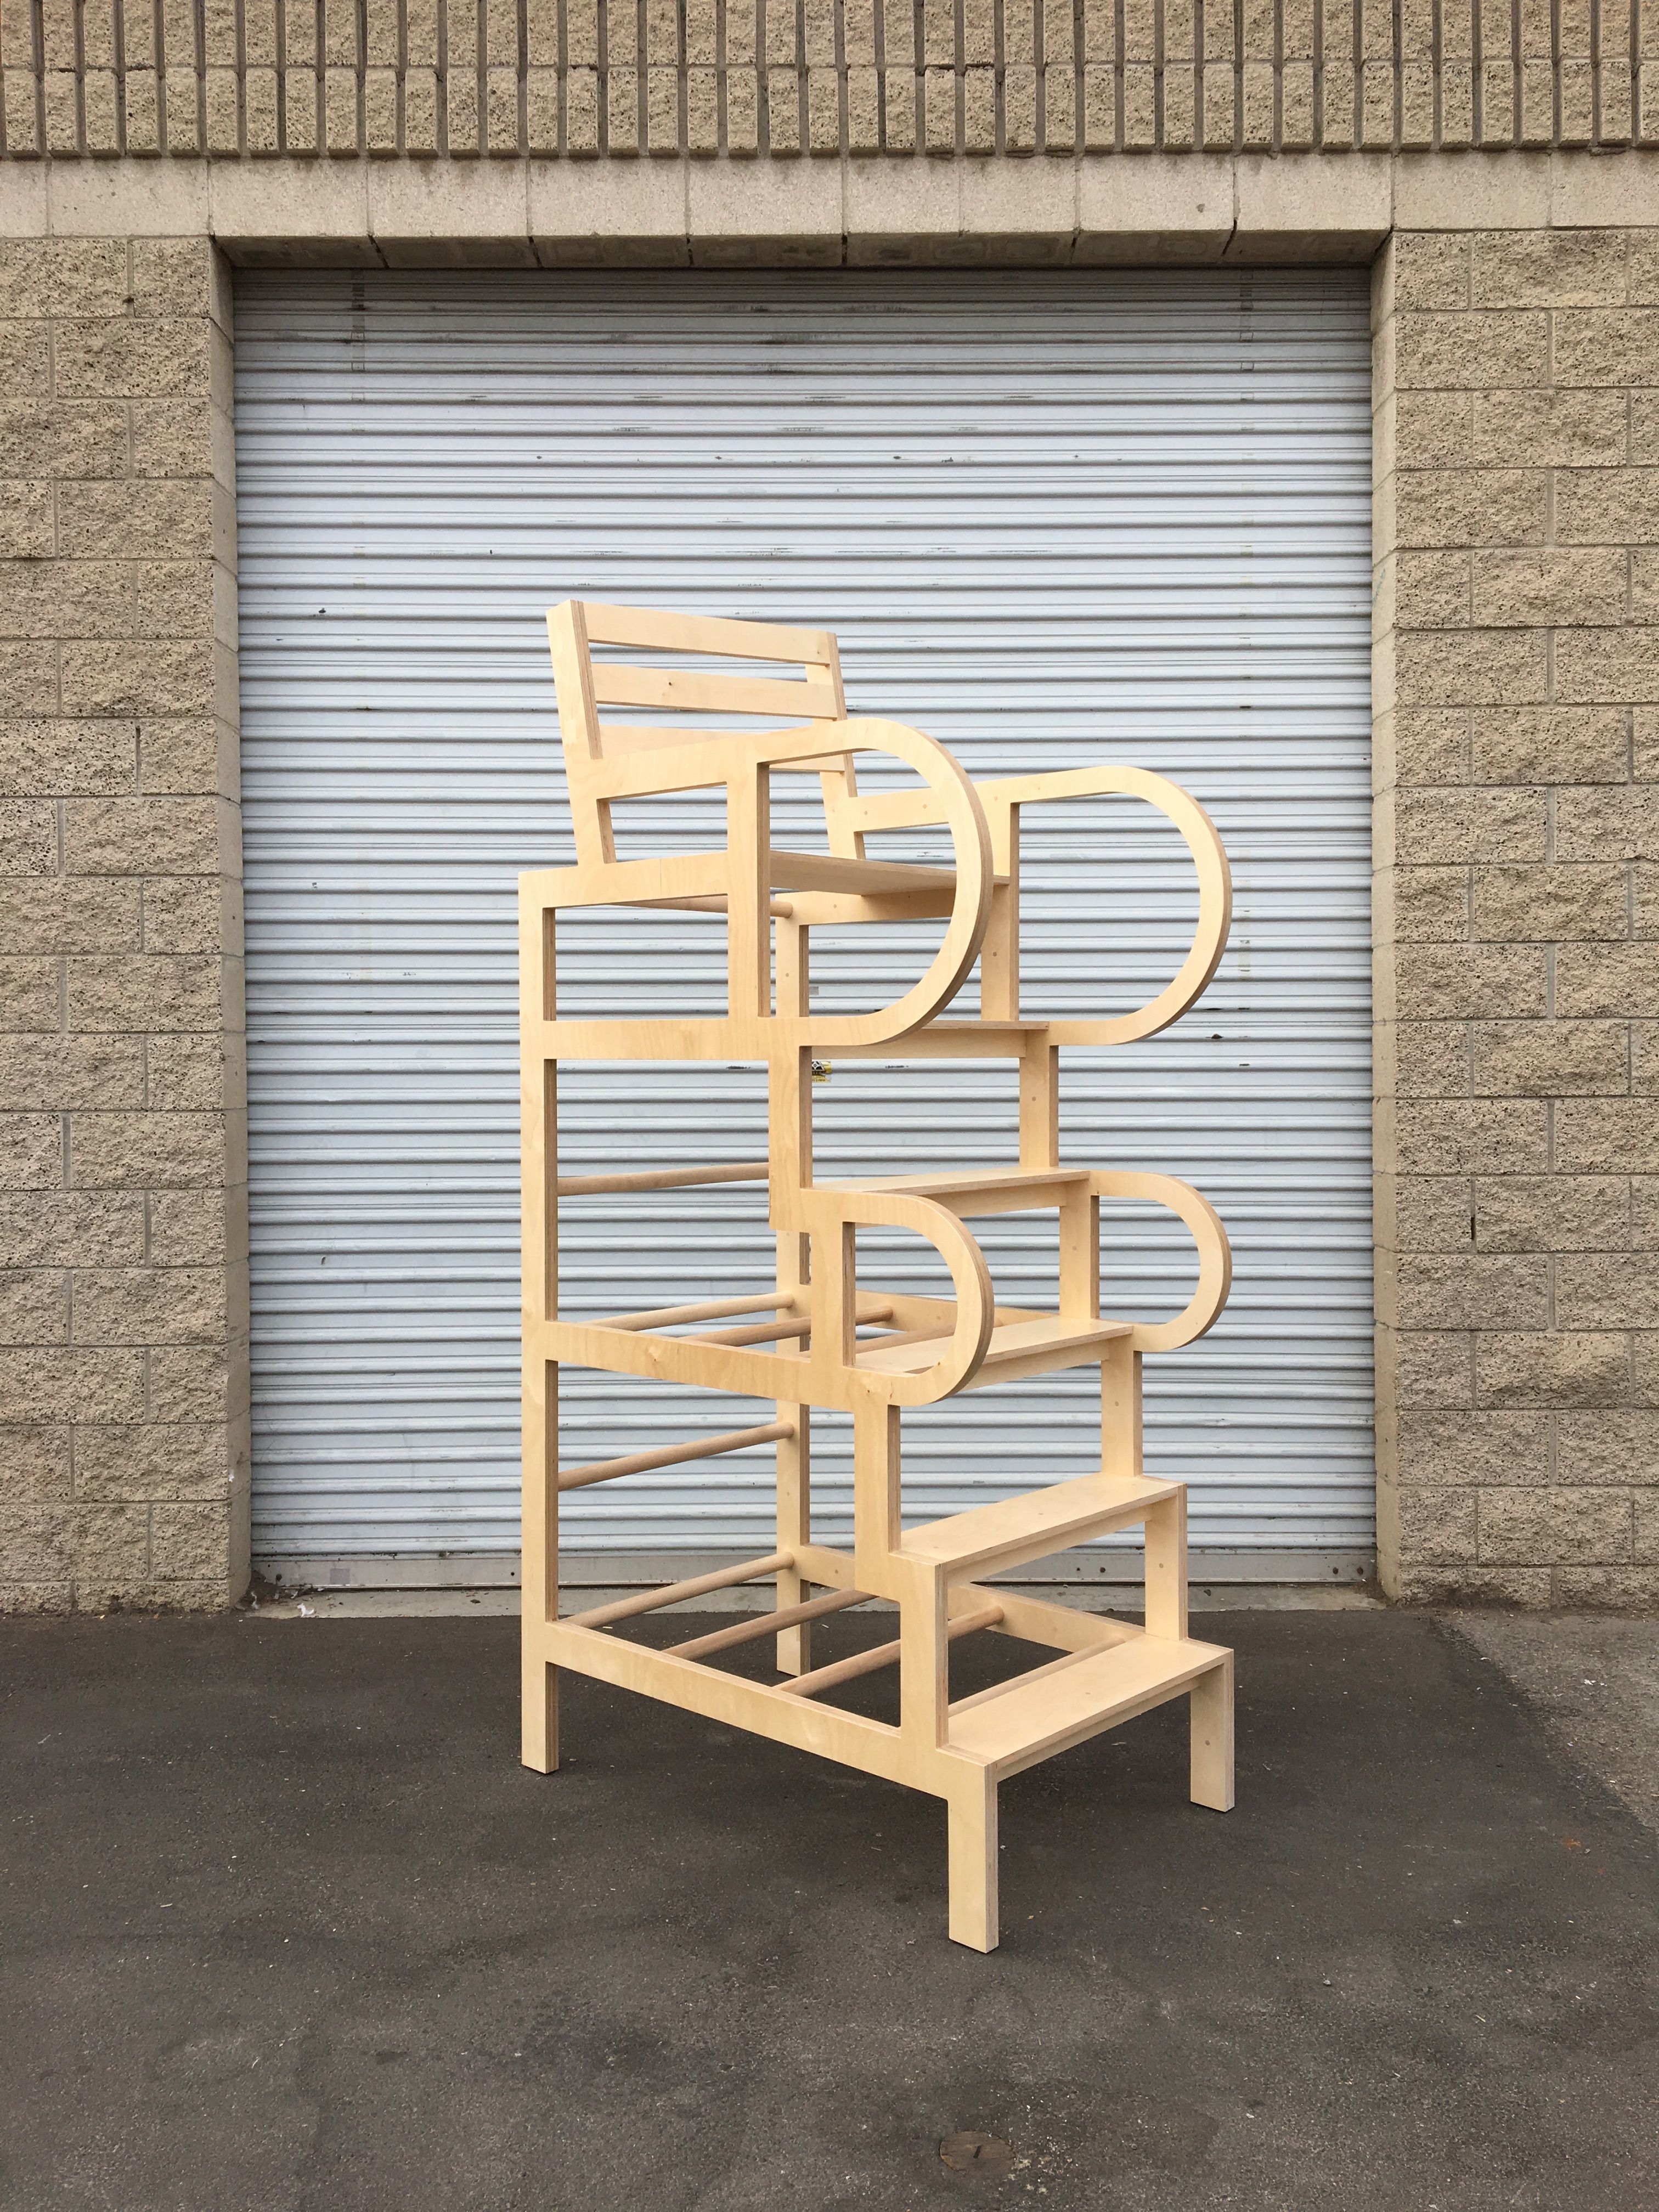  Climbable Chair - Owl Bureau x Adidas / Abbott Kinney Festival product image 1